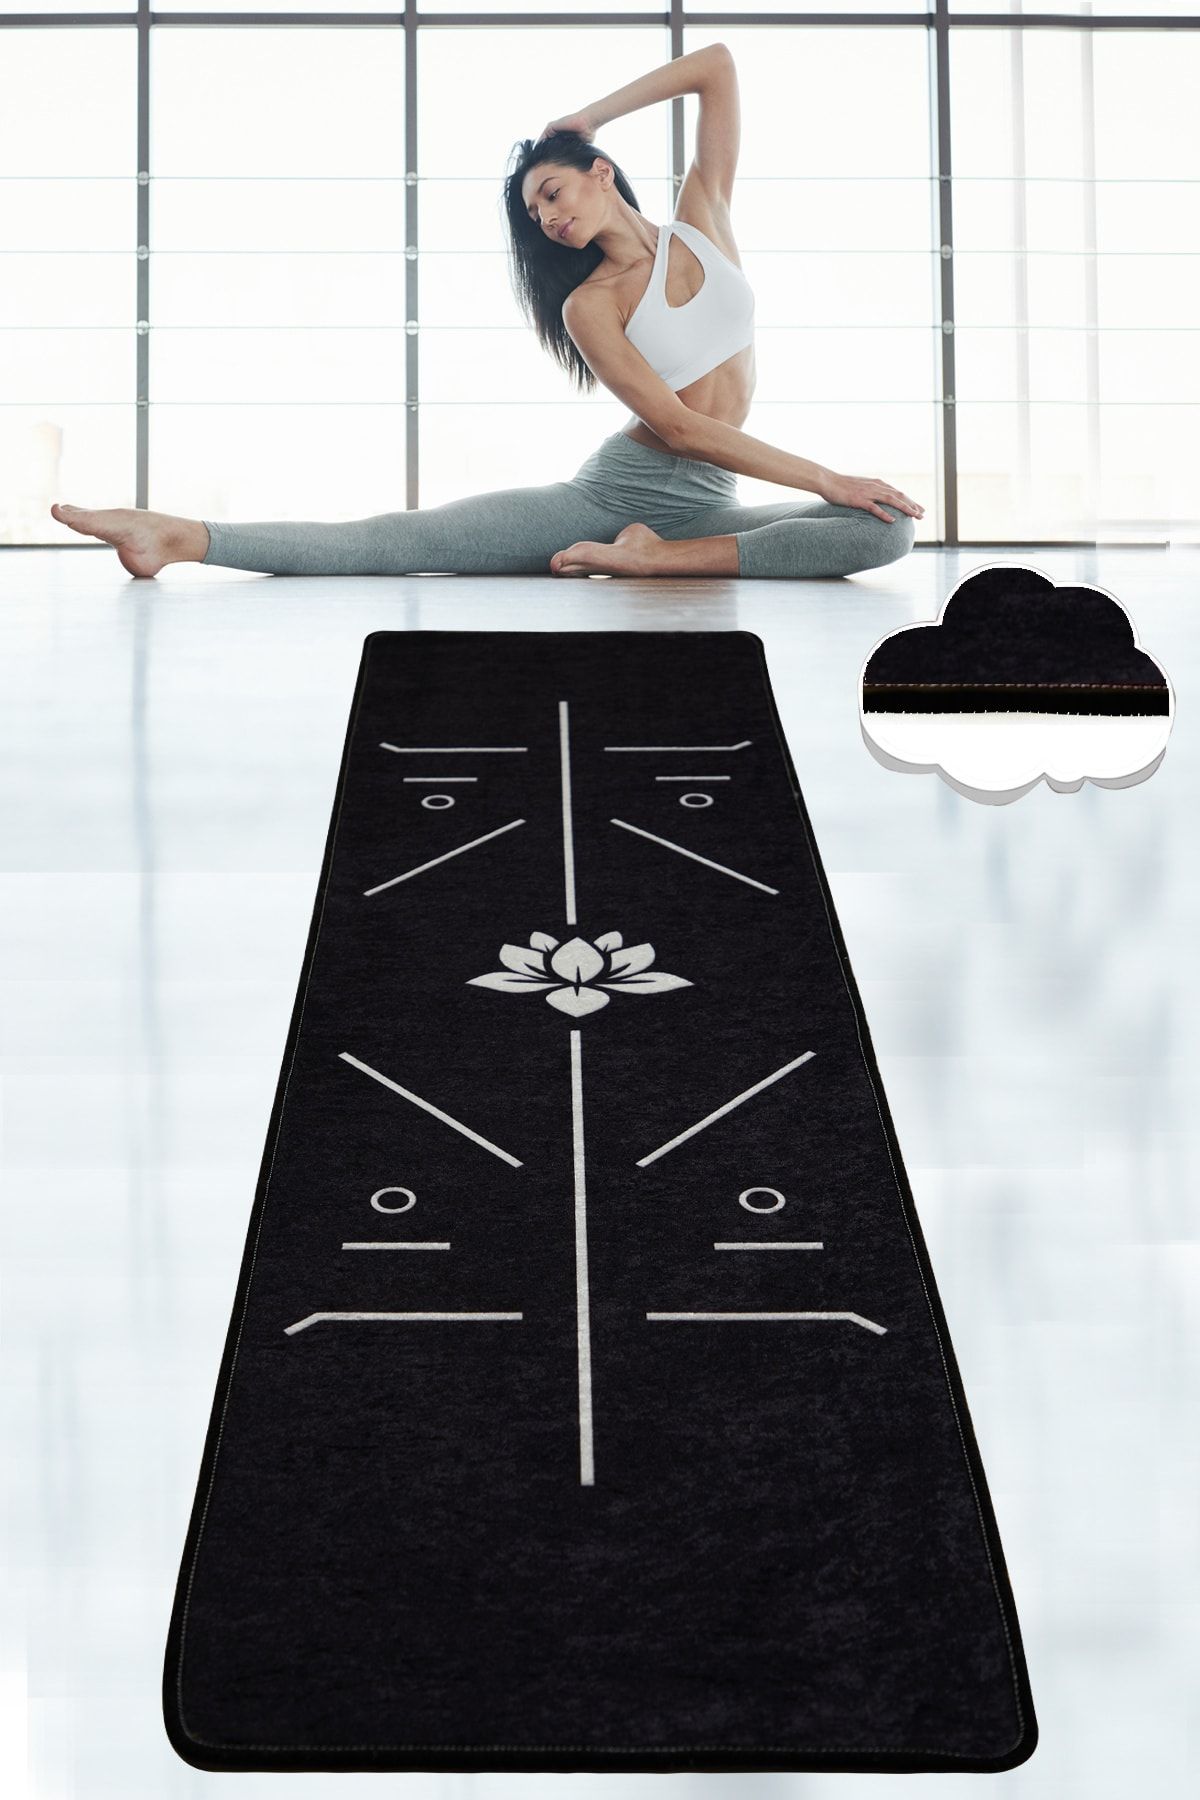 Chilai Home BIKRAM SİYAH 60X200 cm Yoga,Spor,Fitness,Pilates Halısı Yoga Matı Yıkanabilir Kaymaz